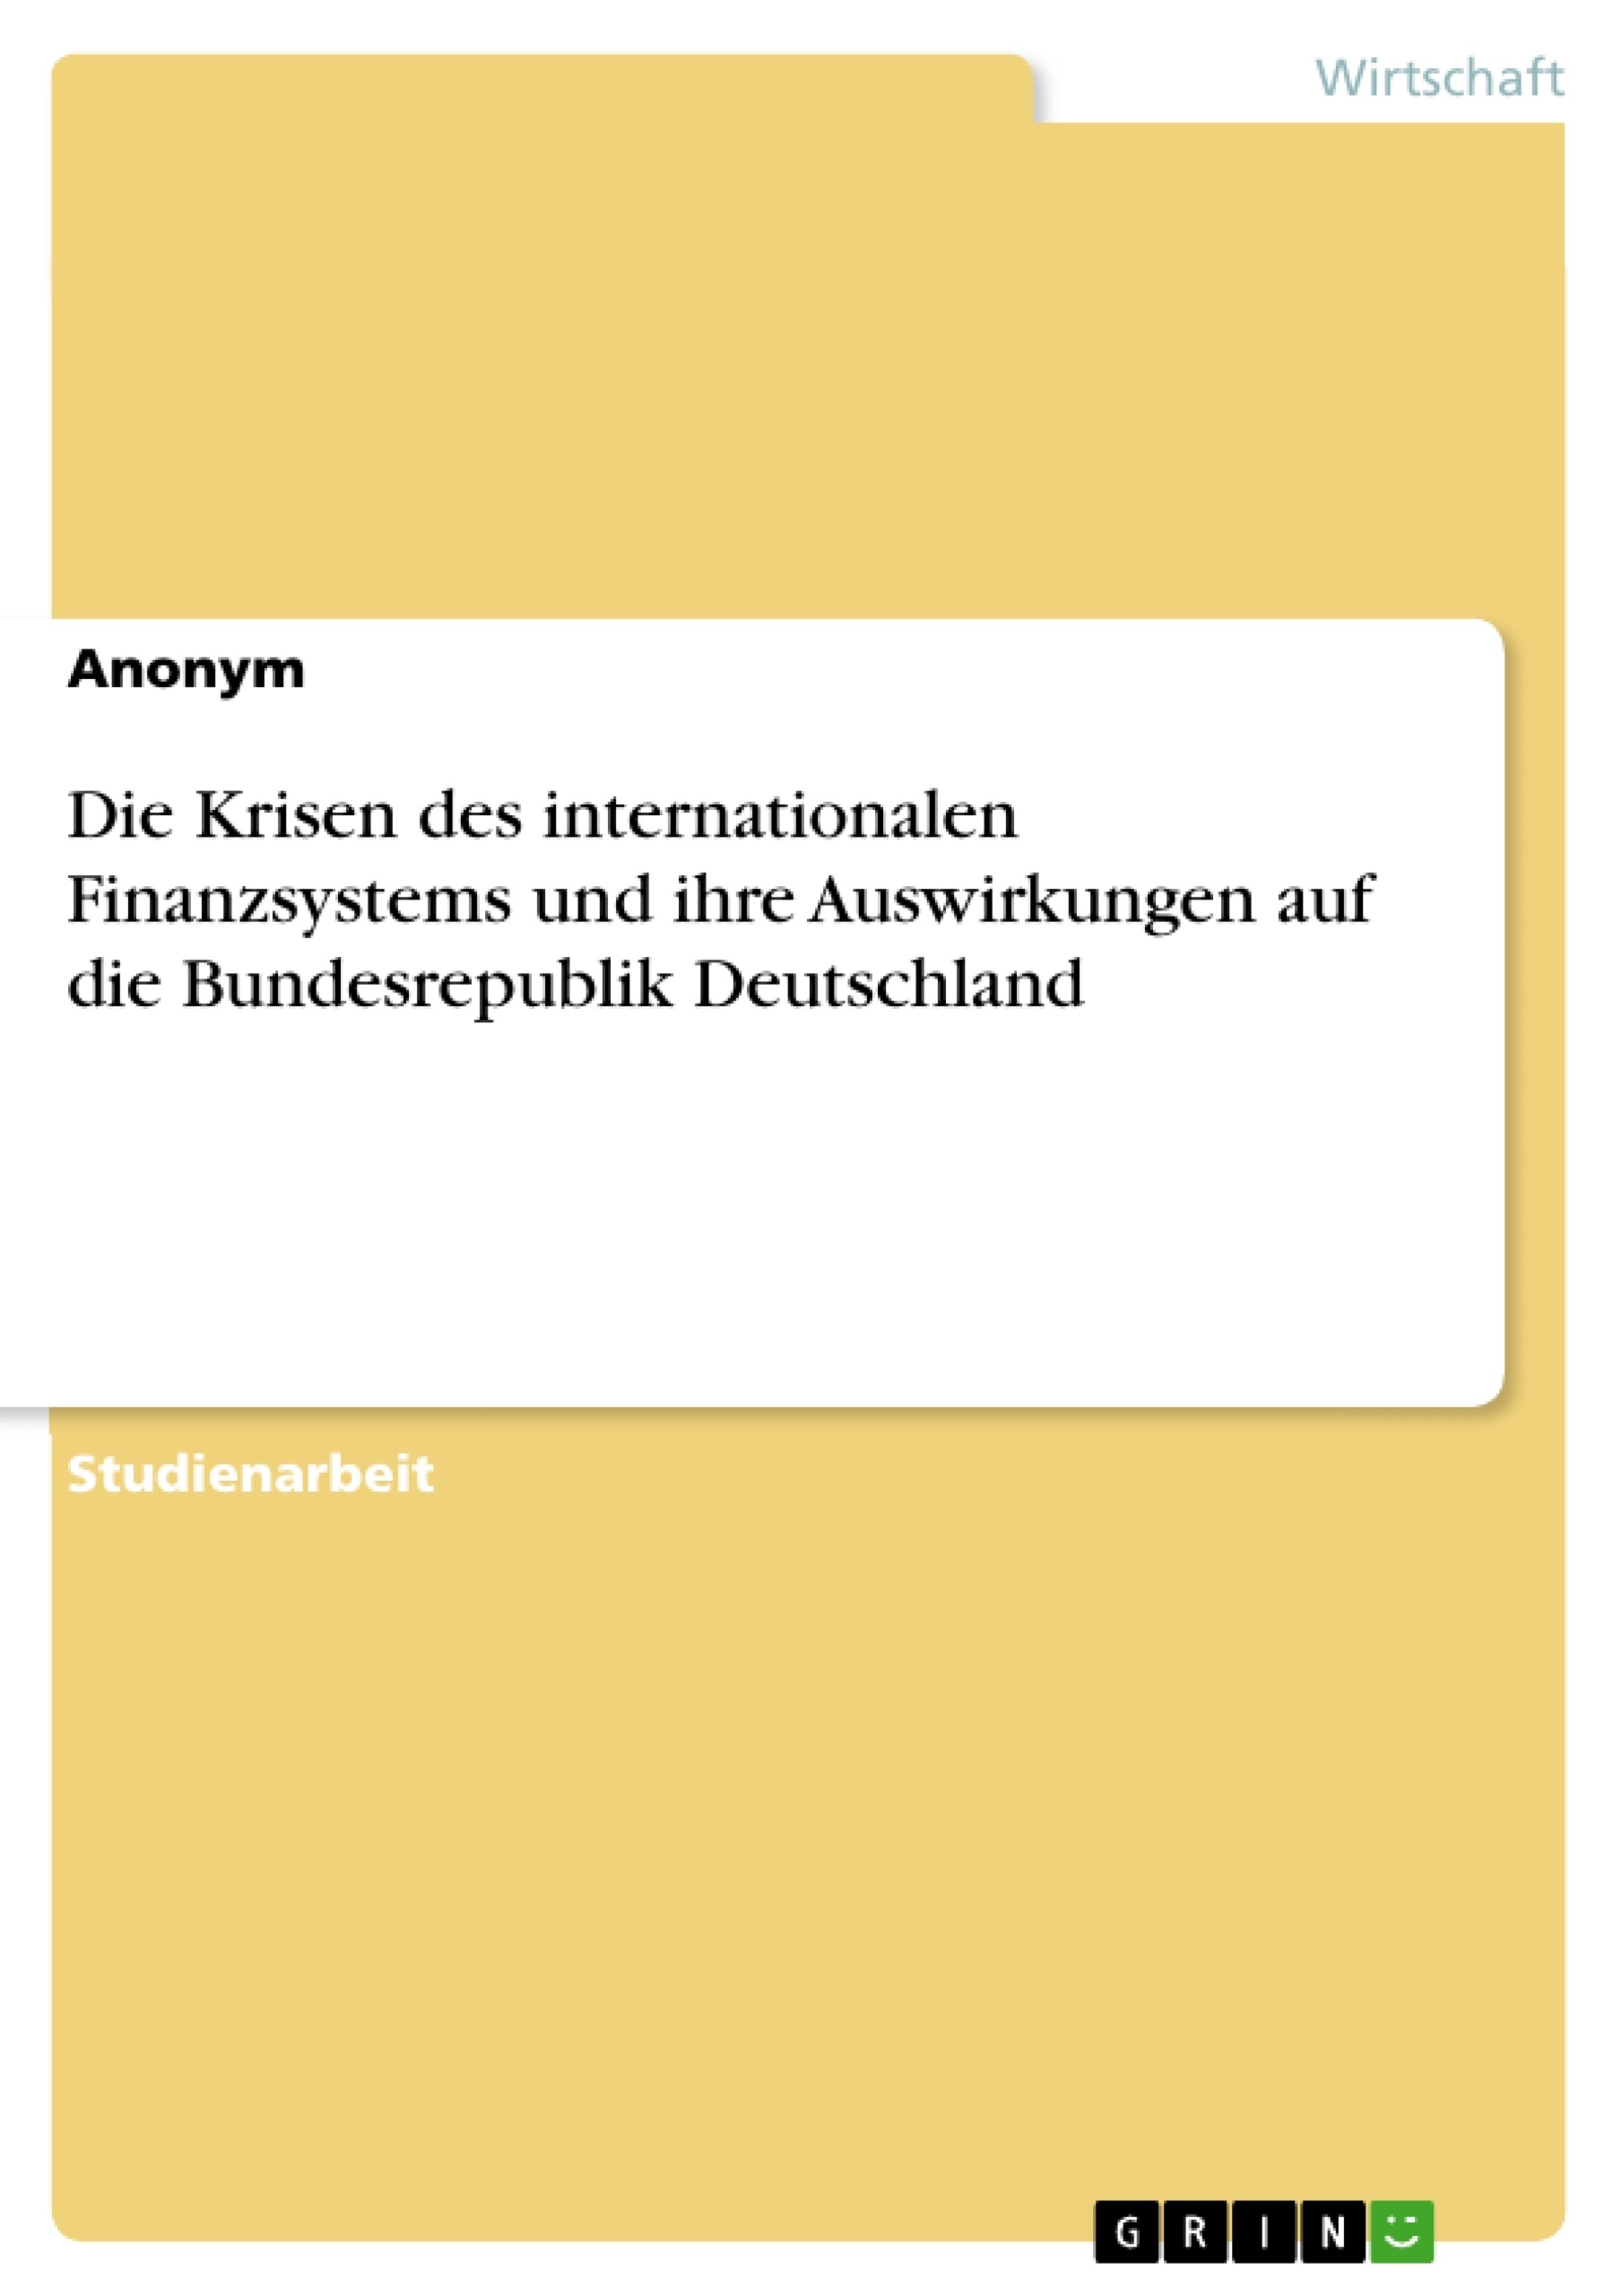 Title: Die Krisen des internationalen Finanzsystems und ihre Auswirkungen auf die Bundesrepublik Deutschland